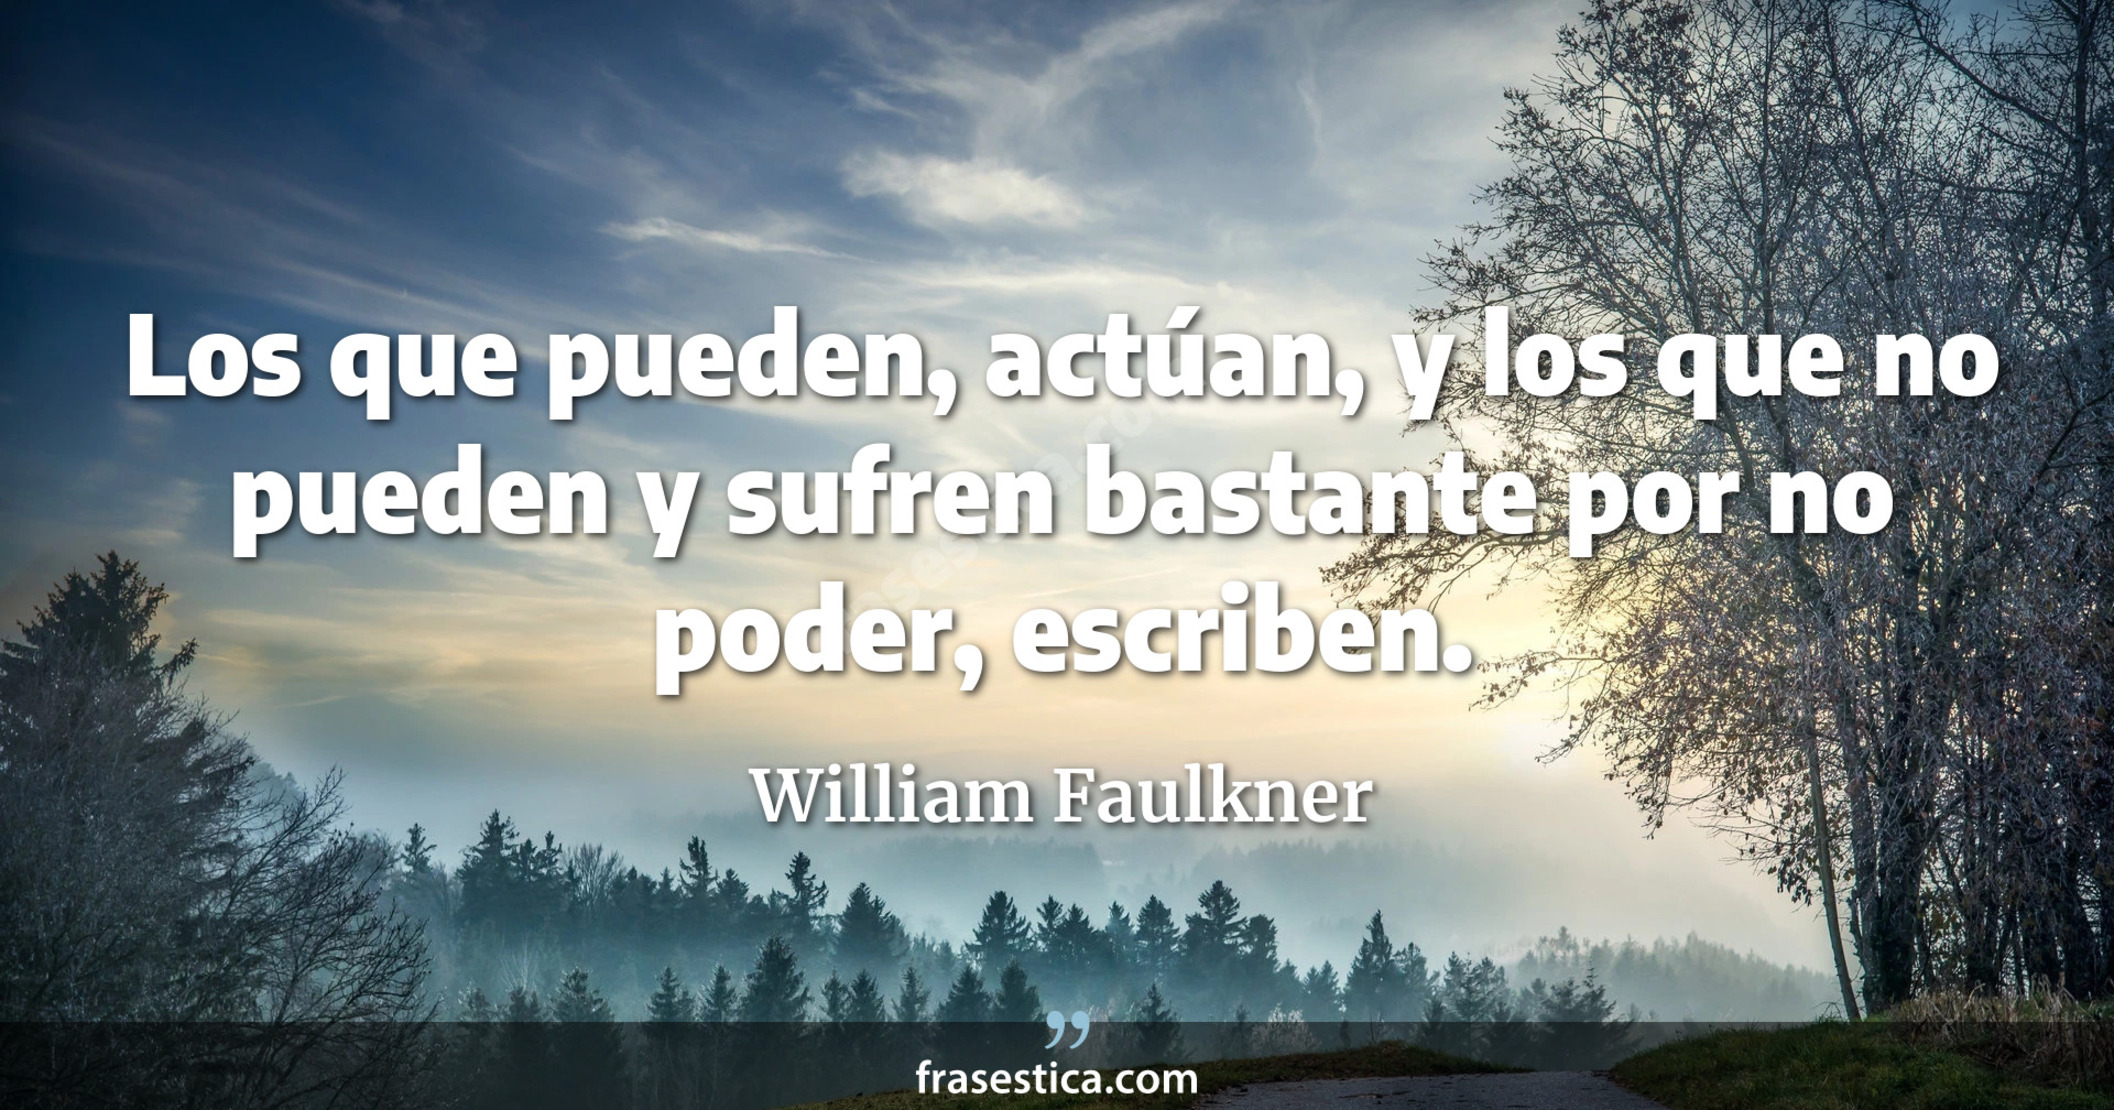 Los que pueden, actúan, y los que no pueden y sufren bastante por no poder, escriben. - William Faulkner